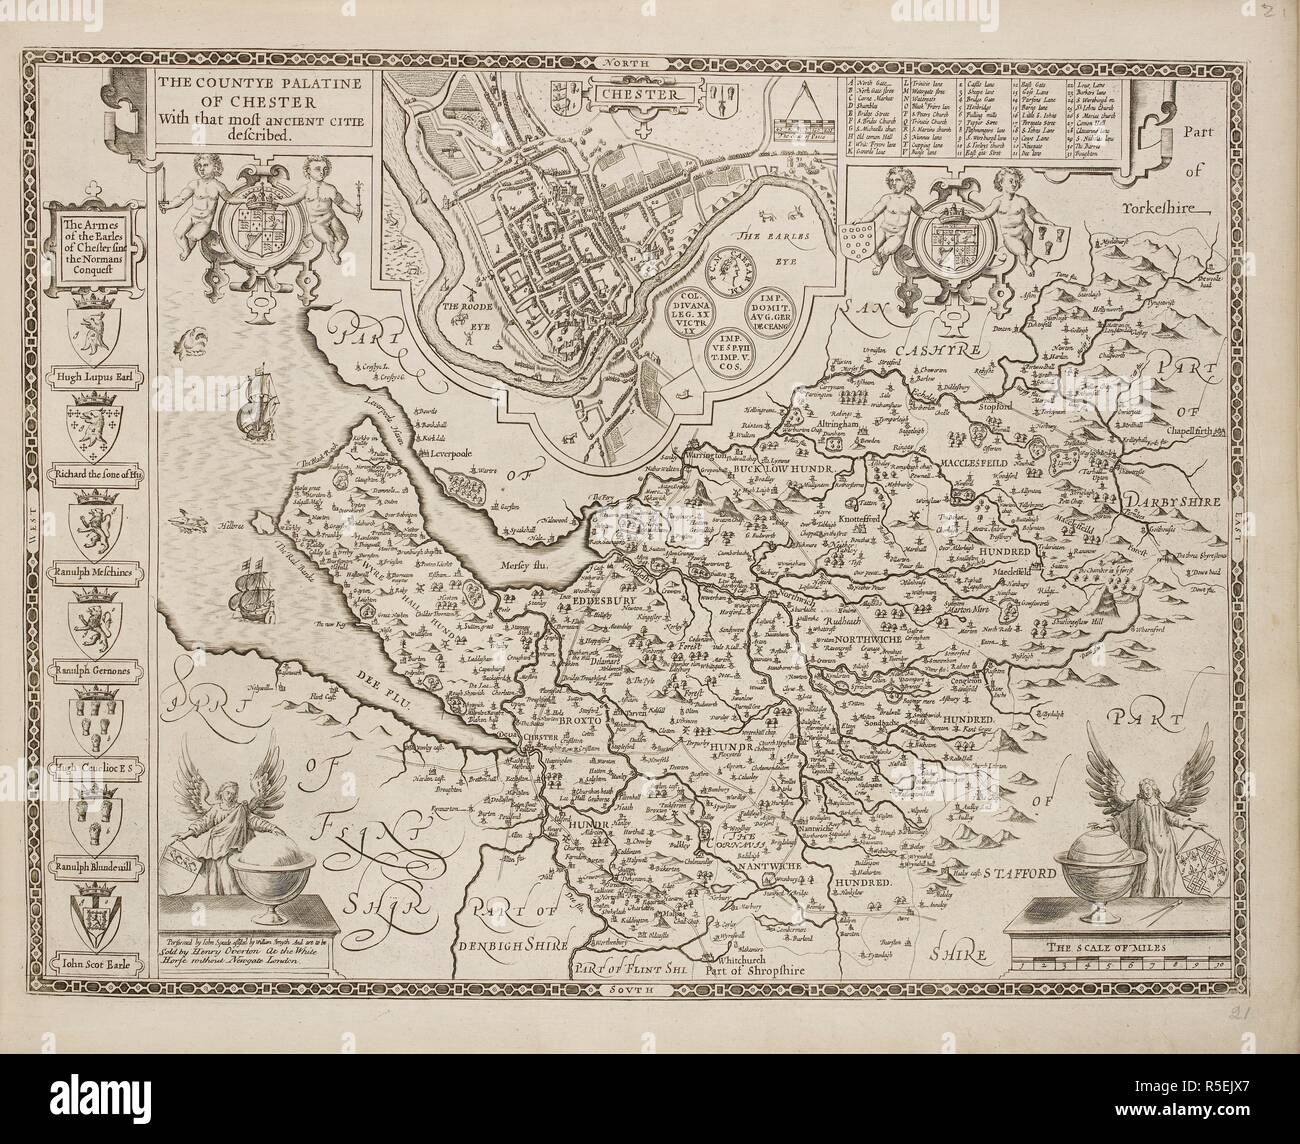 Un mapa del condado de Cheshire y la ciudad de Chester. Una colección de 37 mapas de los condados de Inglaterra. Londres. H. Overton, 1714. Una colección de 37 mapas de los condados de Inglaterra, siendo las reimpresiones, de J. Speedâ€™s mapas, por Henry Overton, junto con los de P. Stent Reimpreso por John Overton, y mapas de Derbyshire y Yorkshire grabado por S. Nicholls. Fuente: Maps.145.c.9 21. Idioma: Inglés. Foto de stock